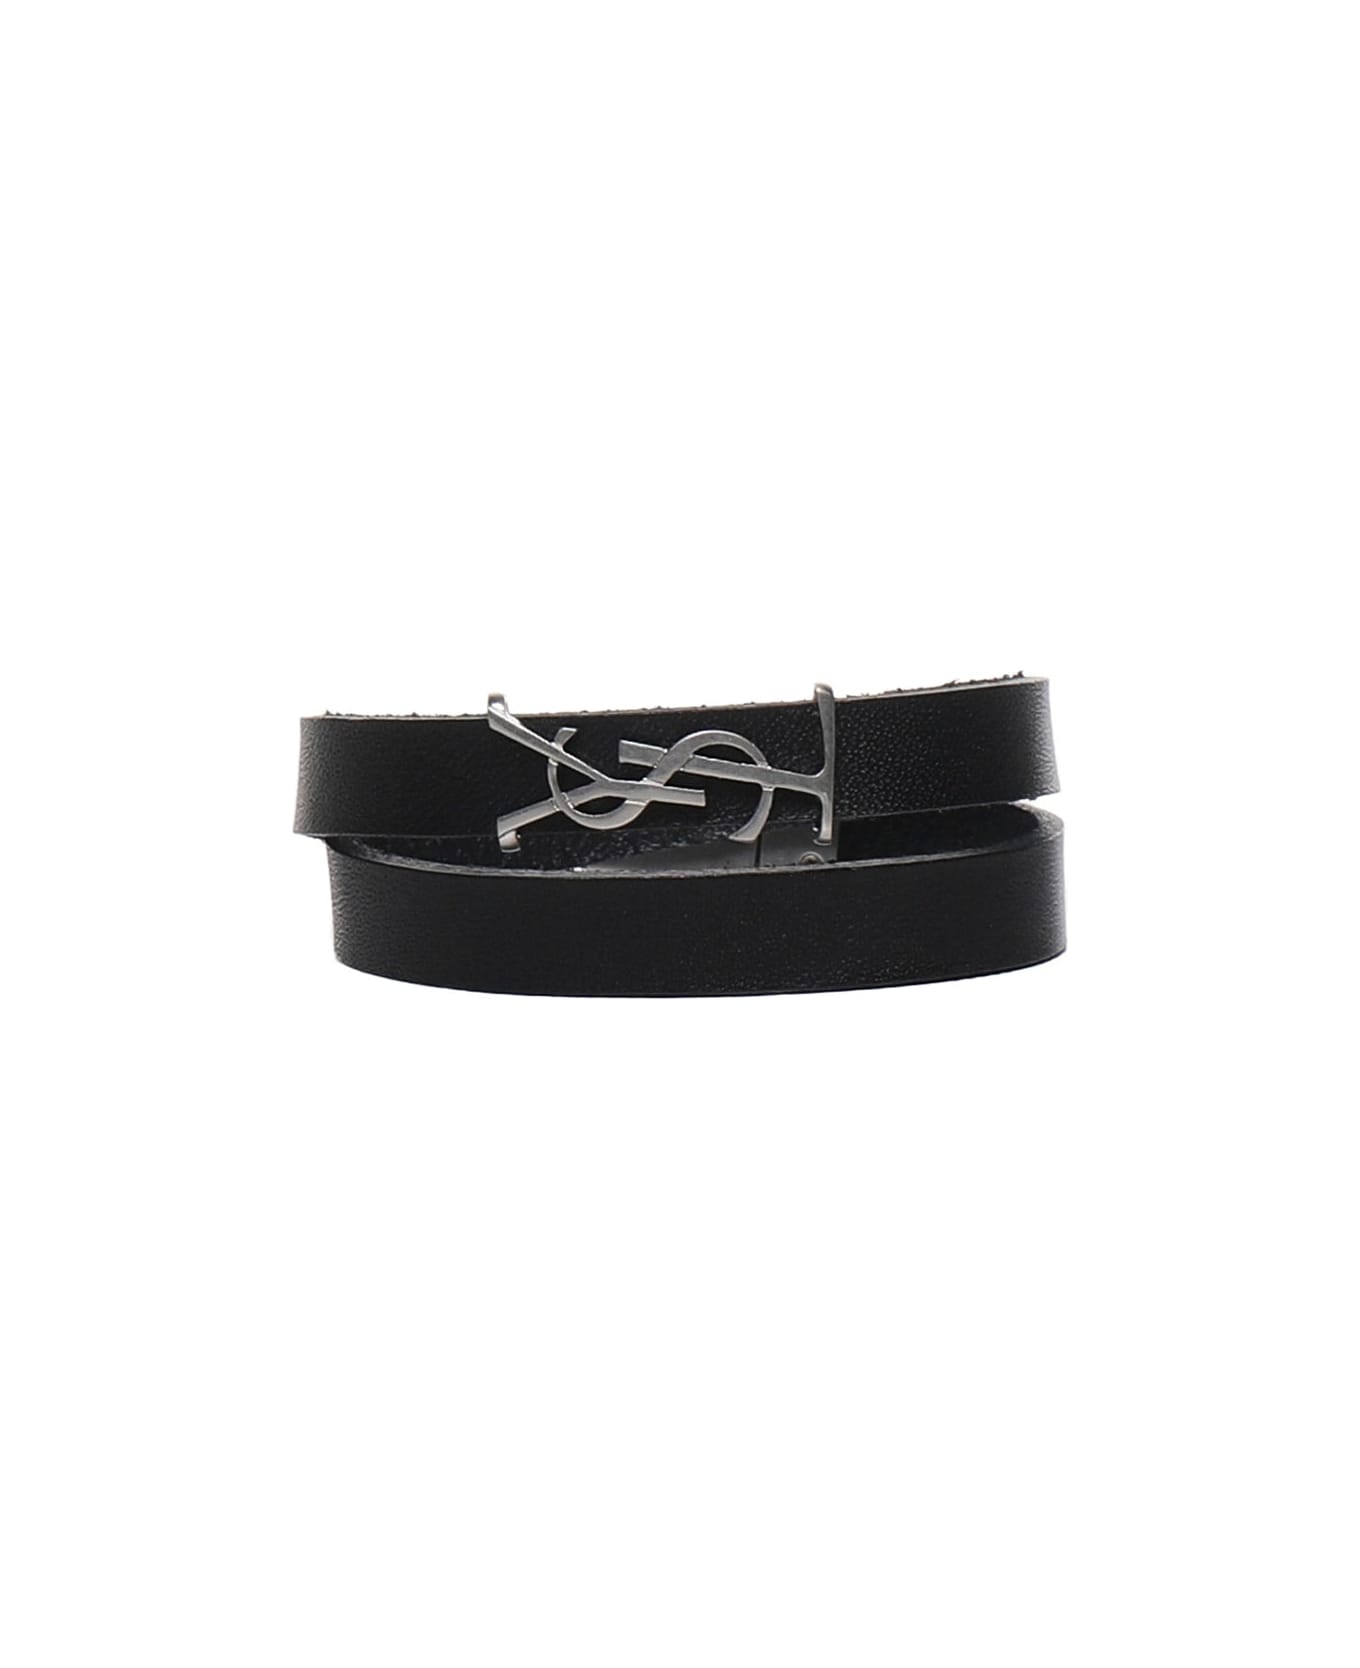 Saint Laurent Leather Ysl Bracelet - Black